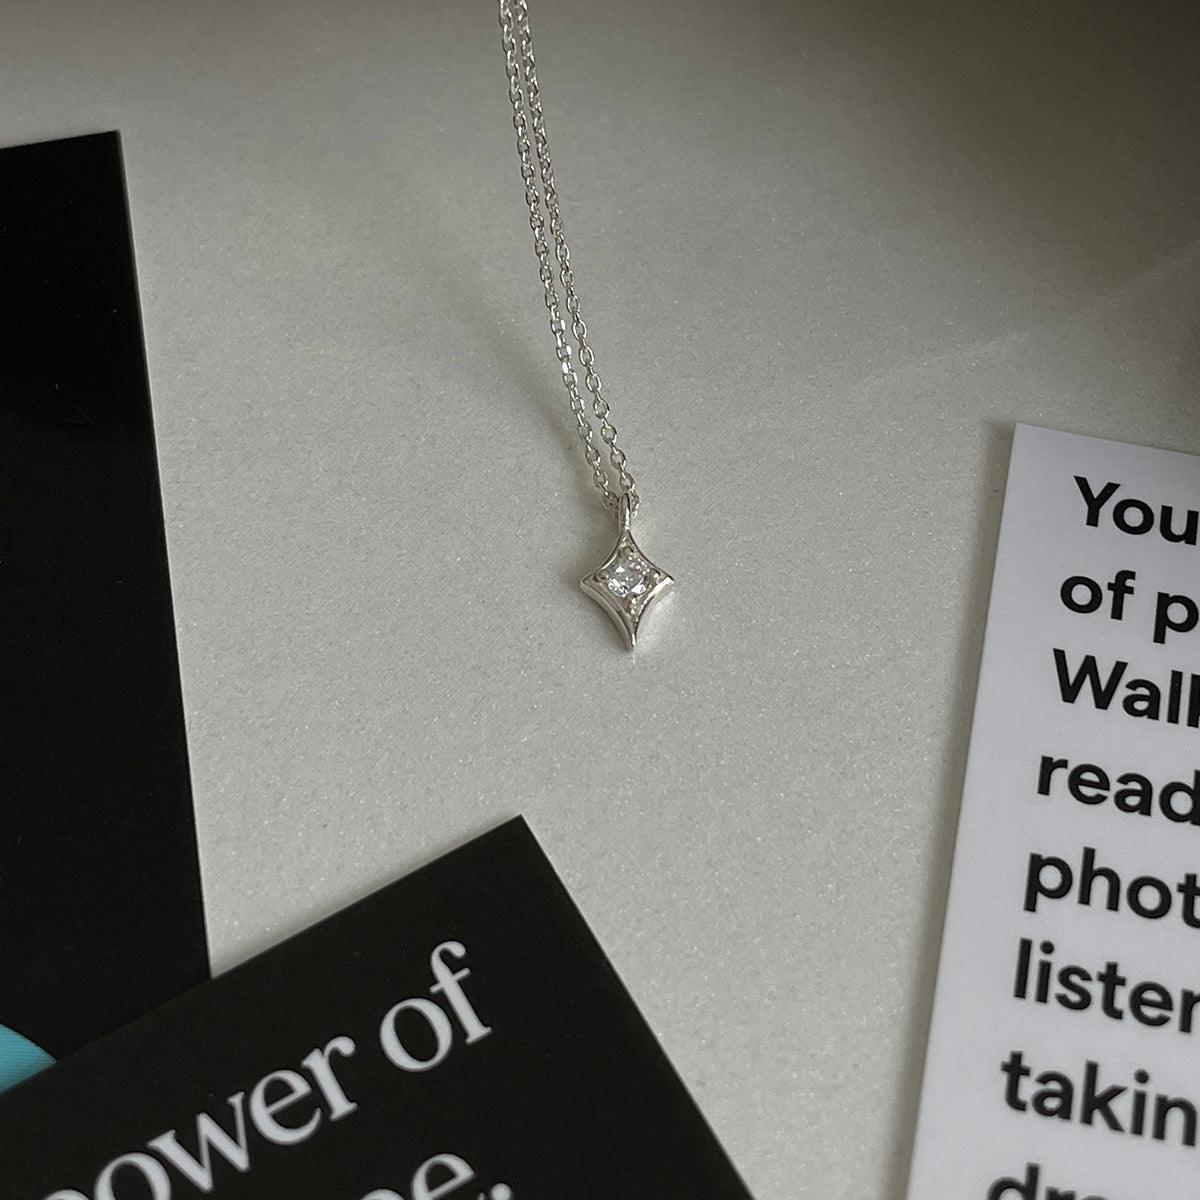 [925 Silver]スピリットキュービックネックレス necklace 10000won 